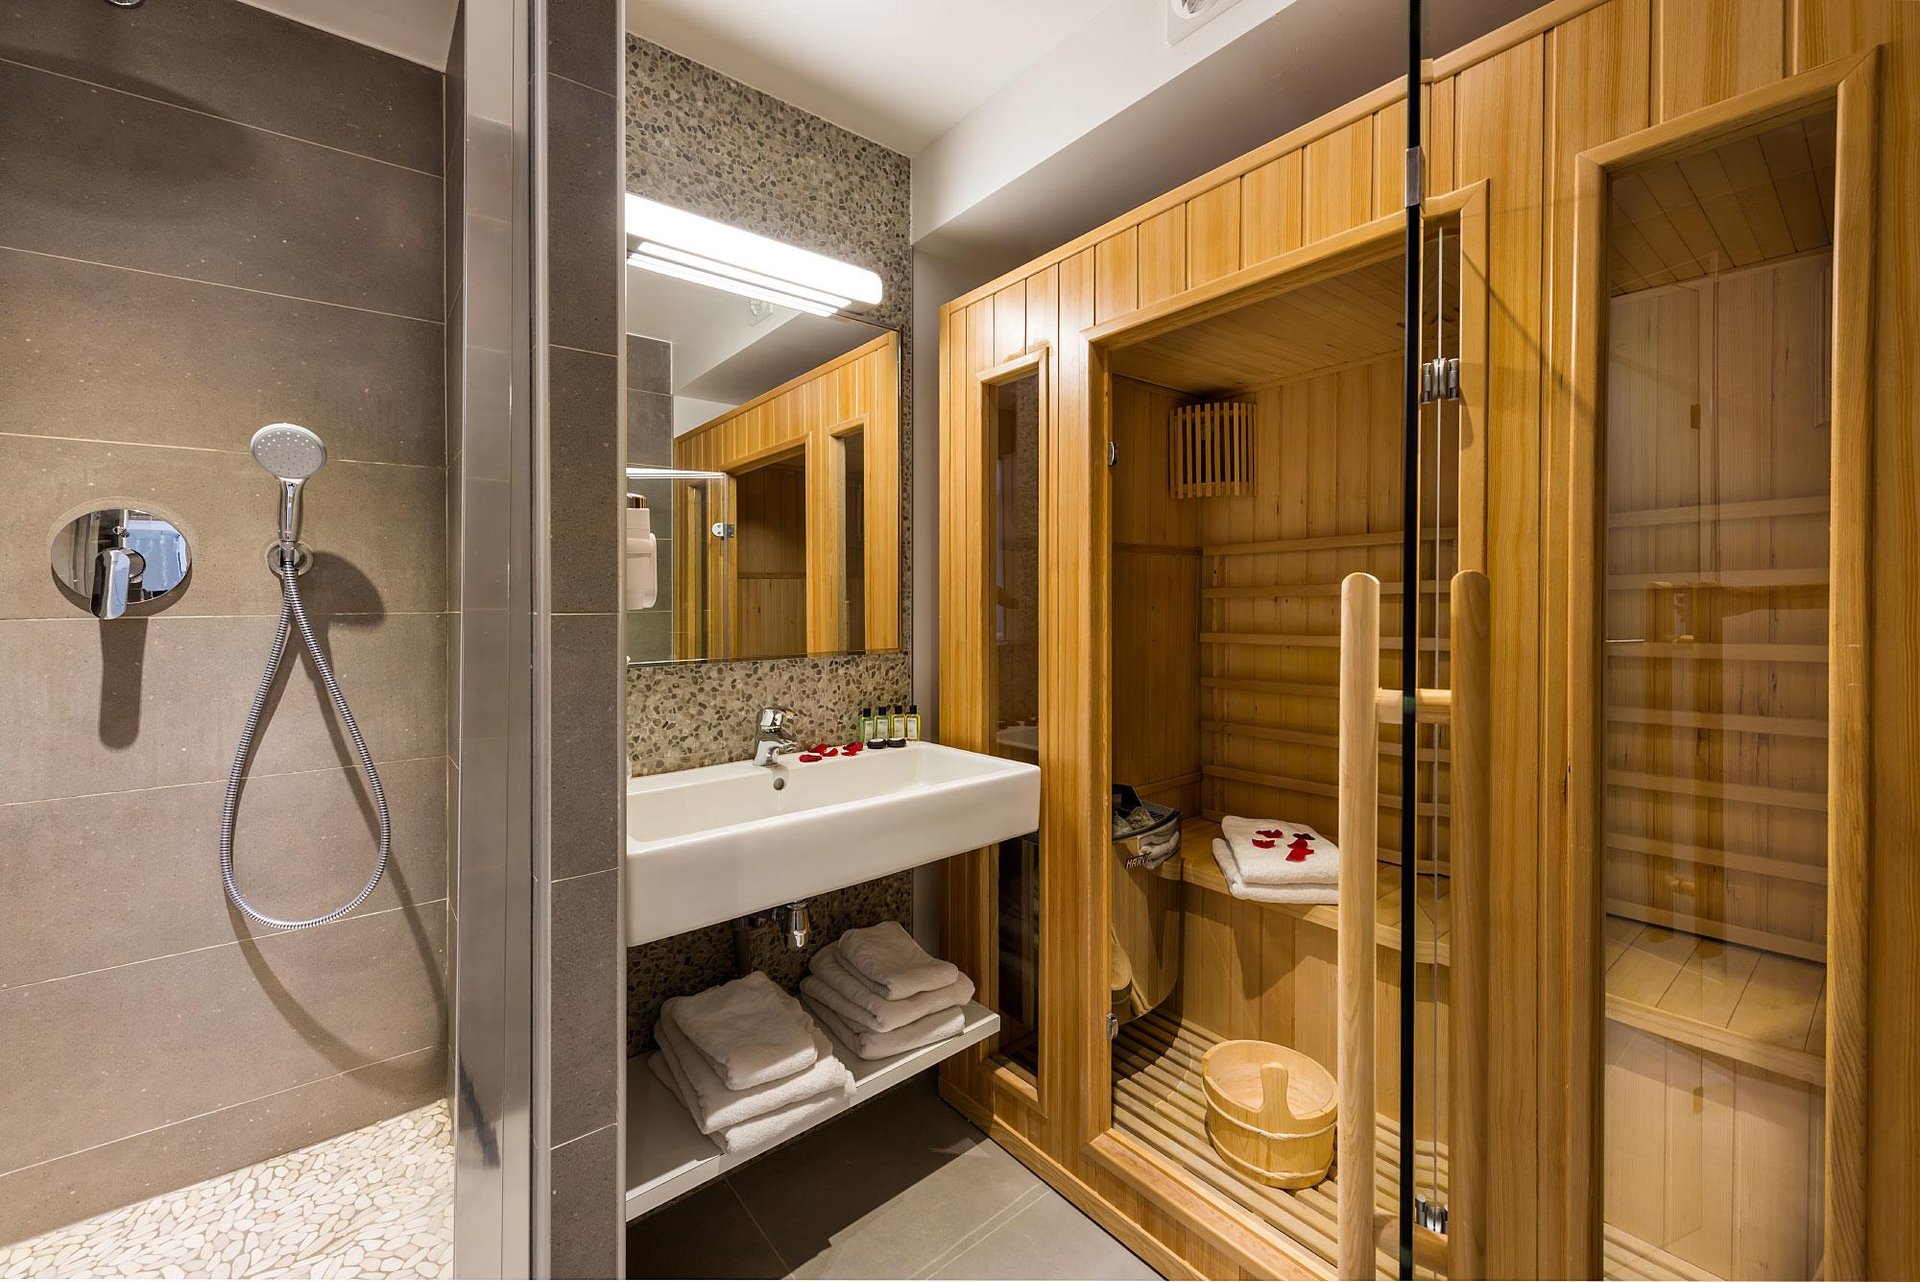 Midnight Hotel Room Bathroom Spa Sauna